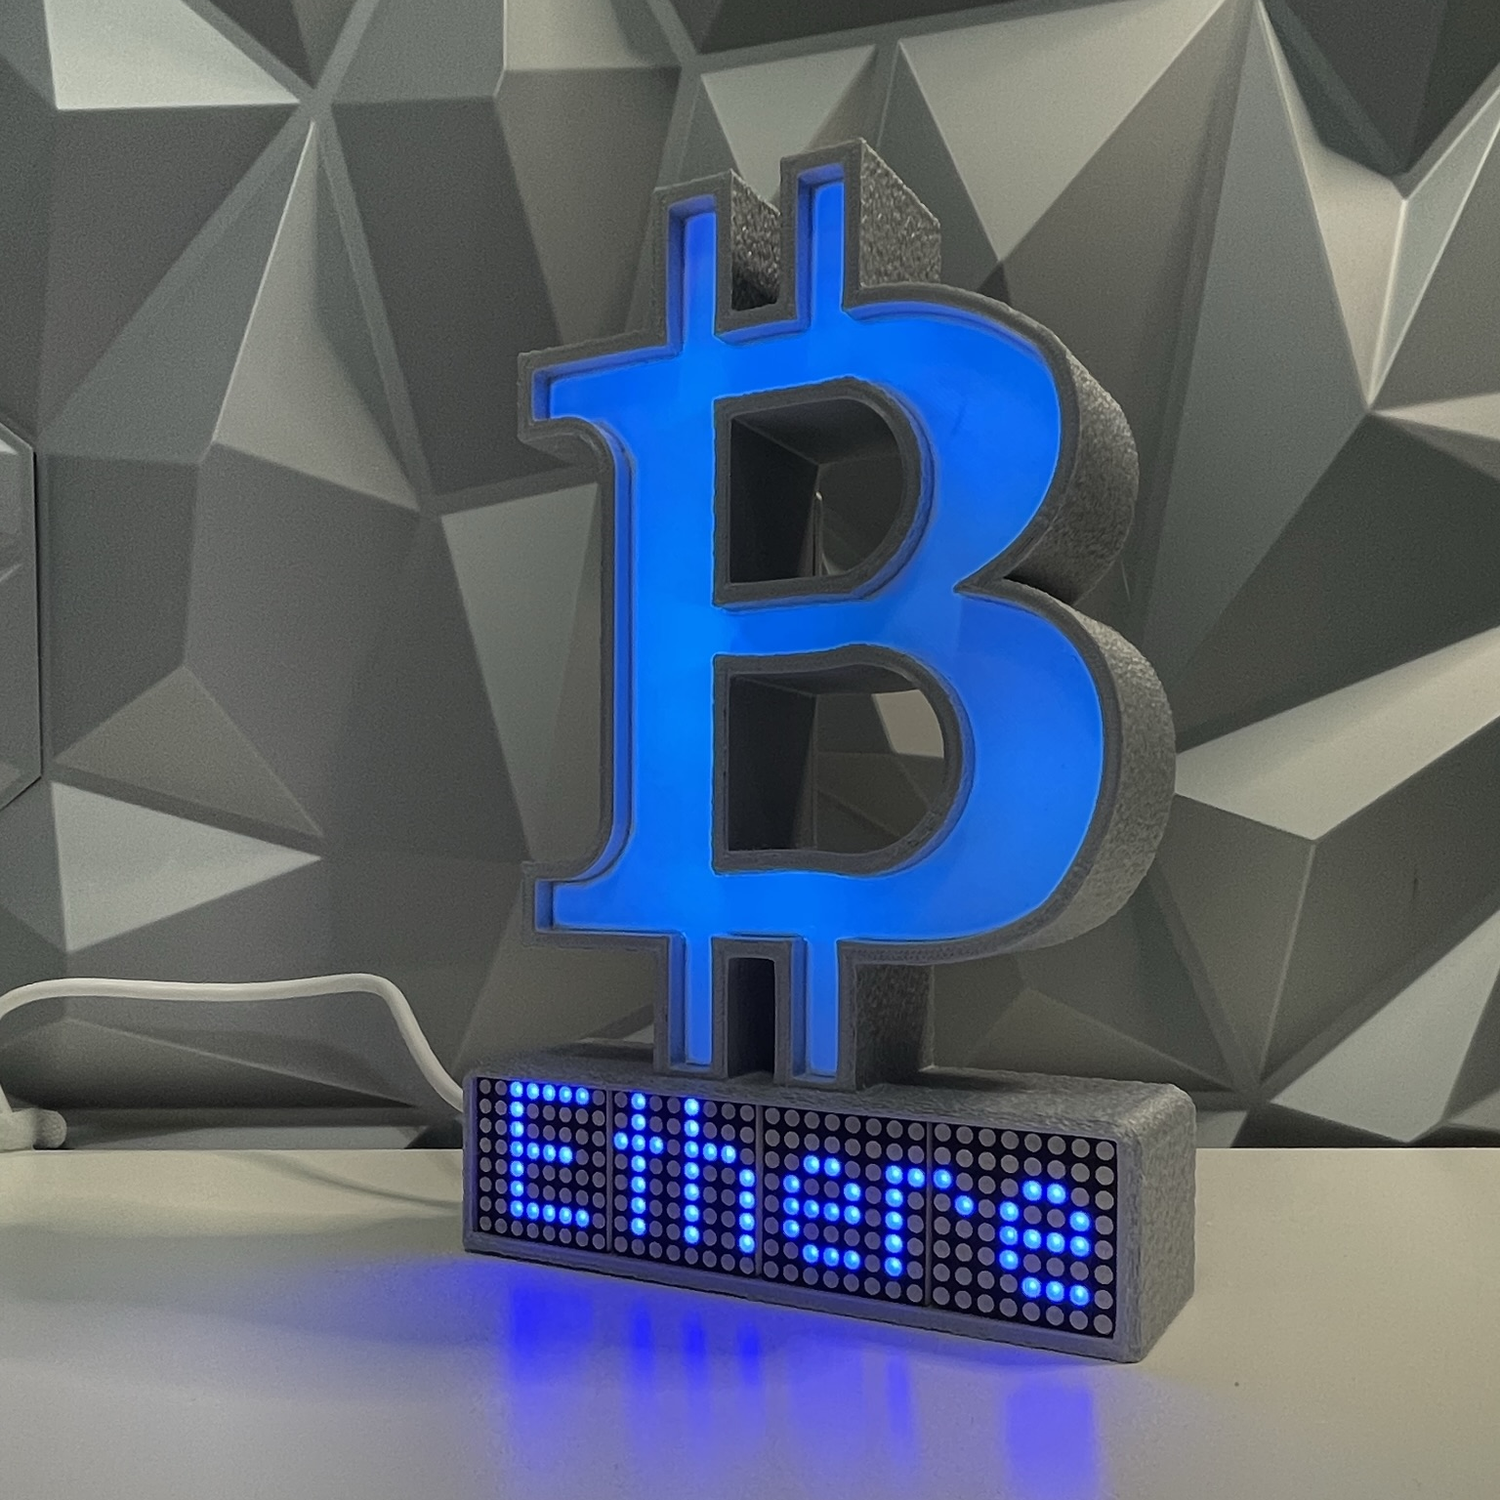 Bitcoin Crypto Coin Price Ticker Display - Crypto Coin Display